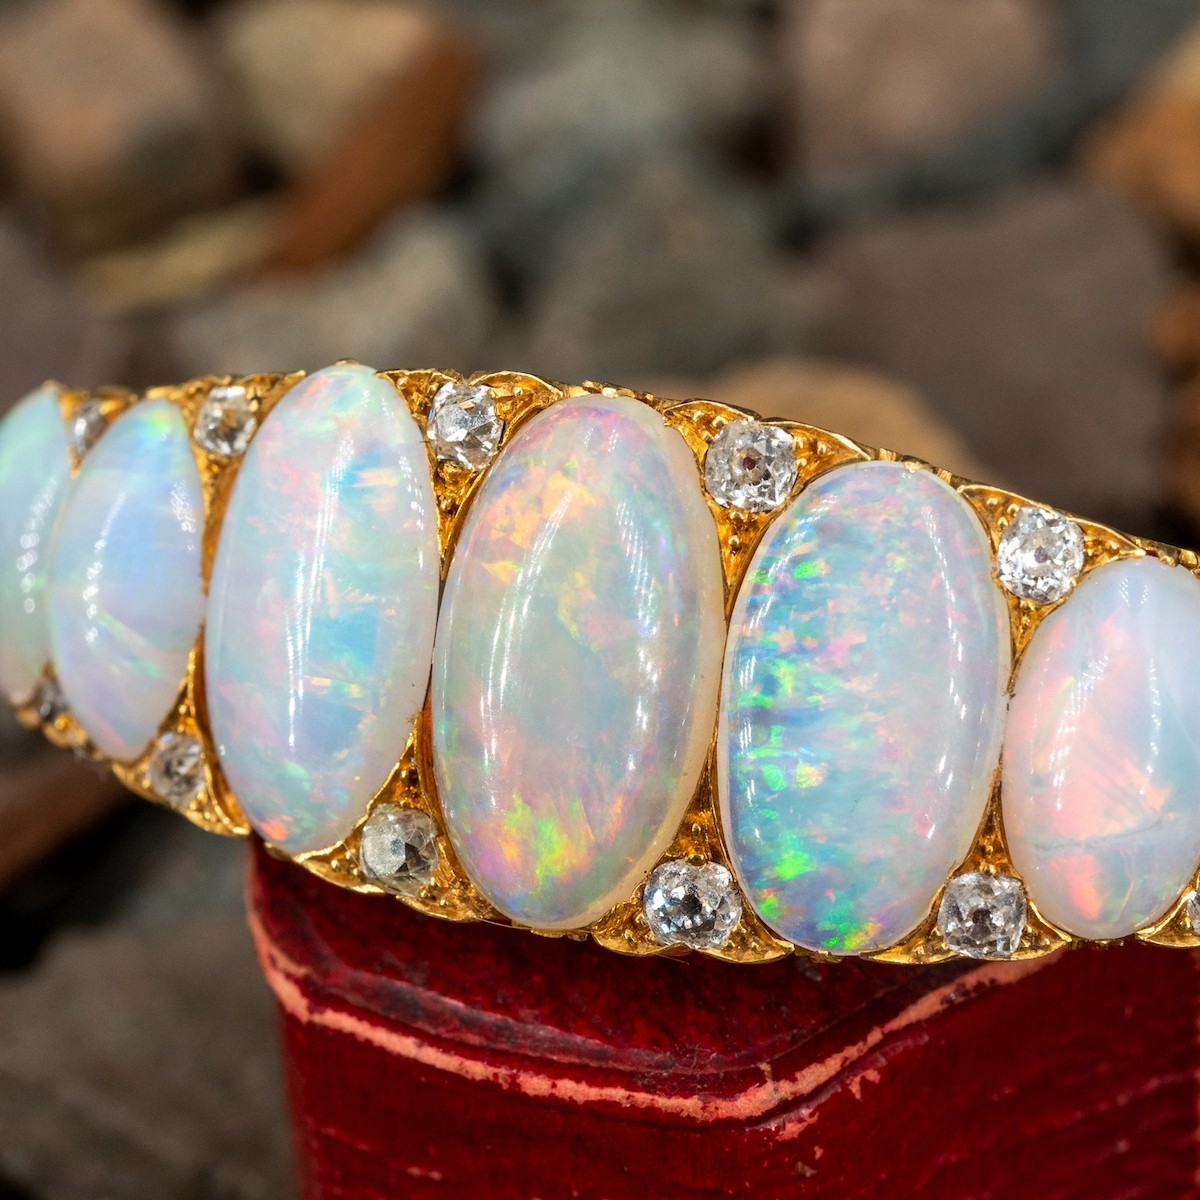 Opal  vintage crystal silver bangle bracelet